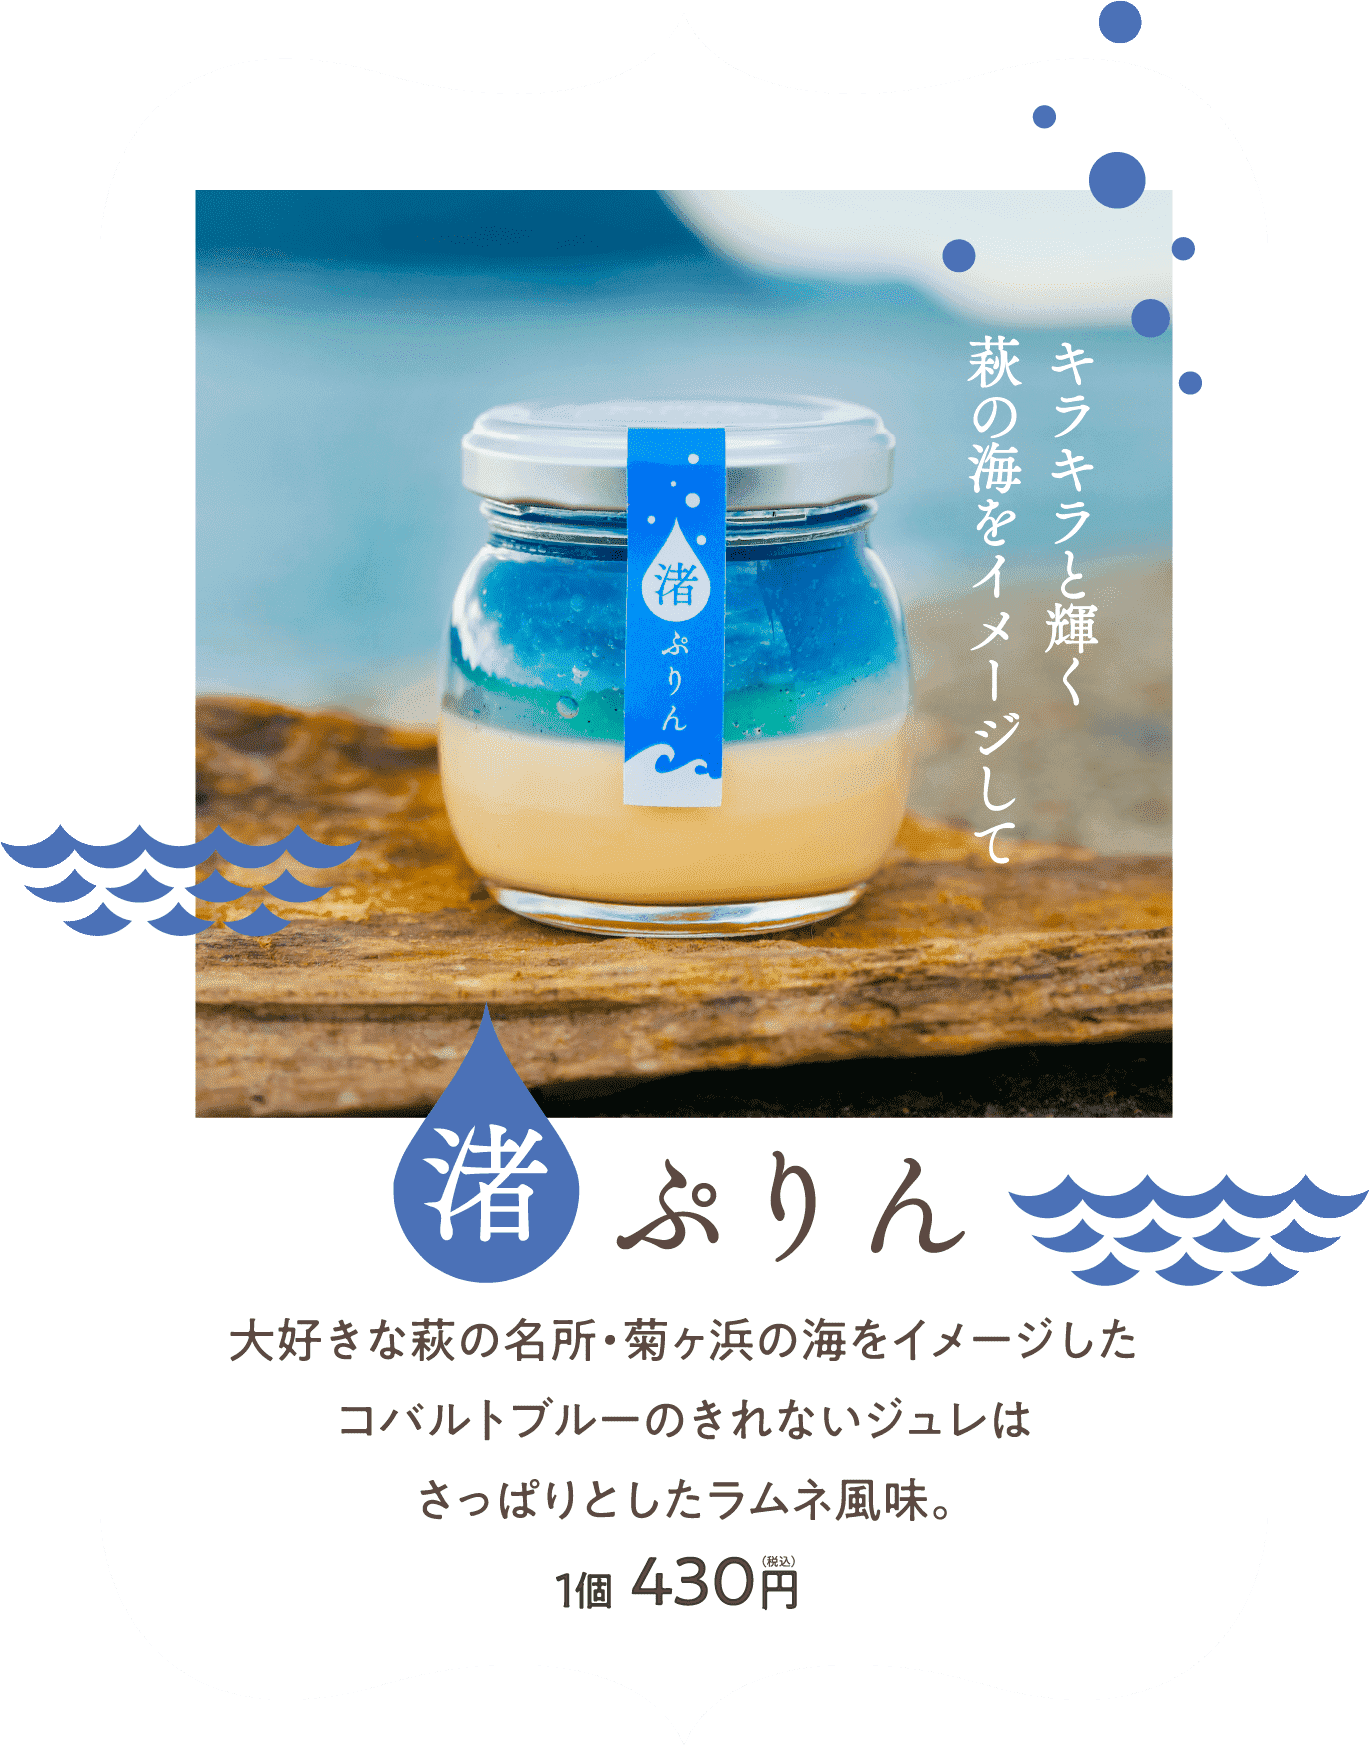 大好きな萩の名所・菊ヶ浜の海をイメージした コバルトブルーのきれないジュレは さっぱりとしたラムネ風味。